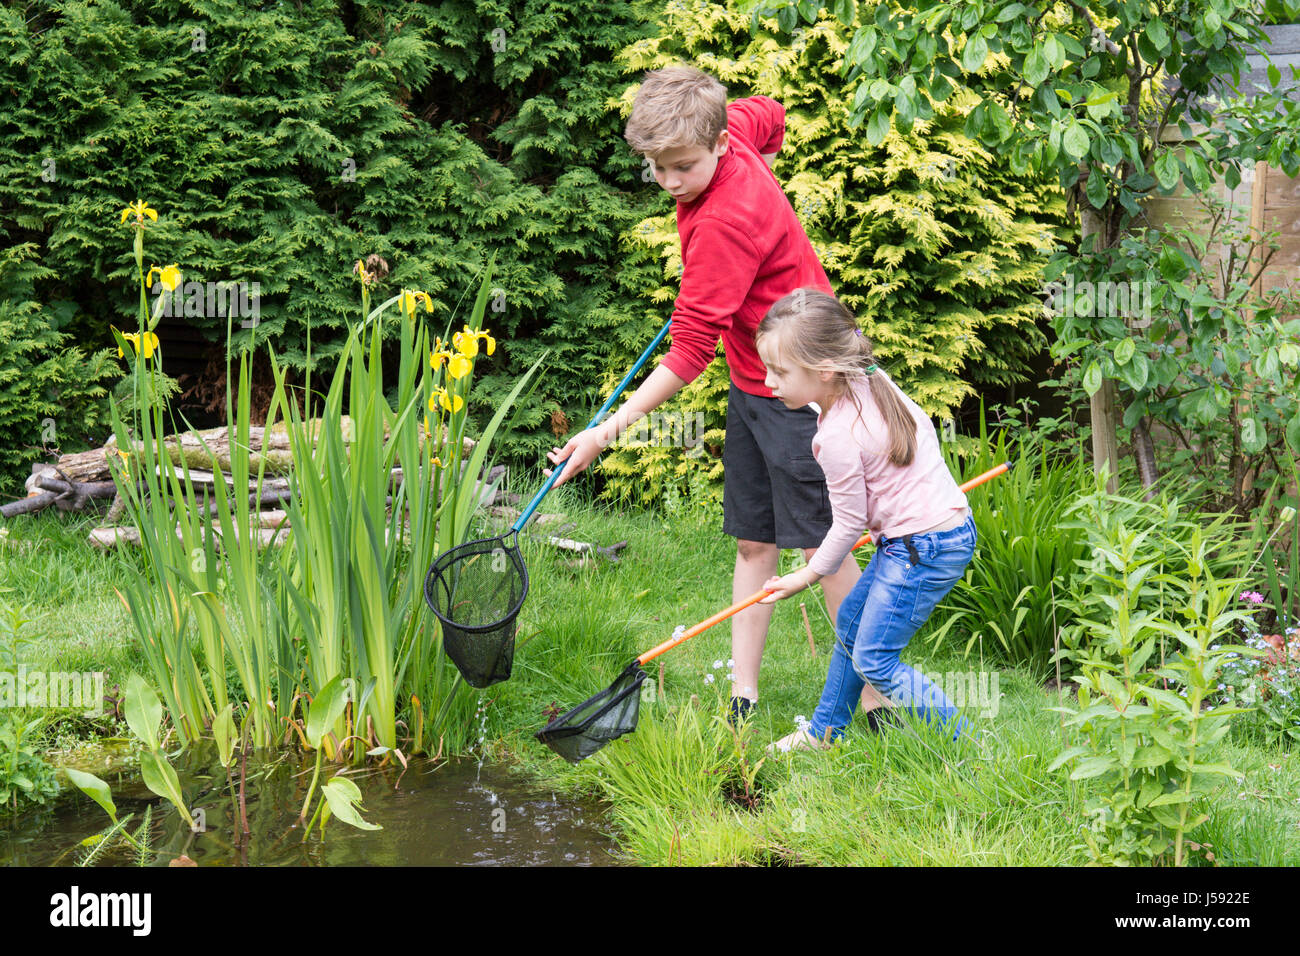 elf Jahre alten Jungen und vier Jahre altes Mädchen Teich eintauchen, Kaulquappen und andere Wildtiere in einem Netz in einem Gartenteich zu fangen versuchen. Sussex, UK. Mai. Stockfoto